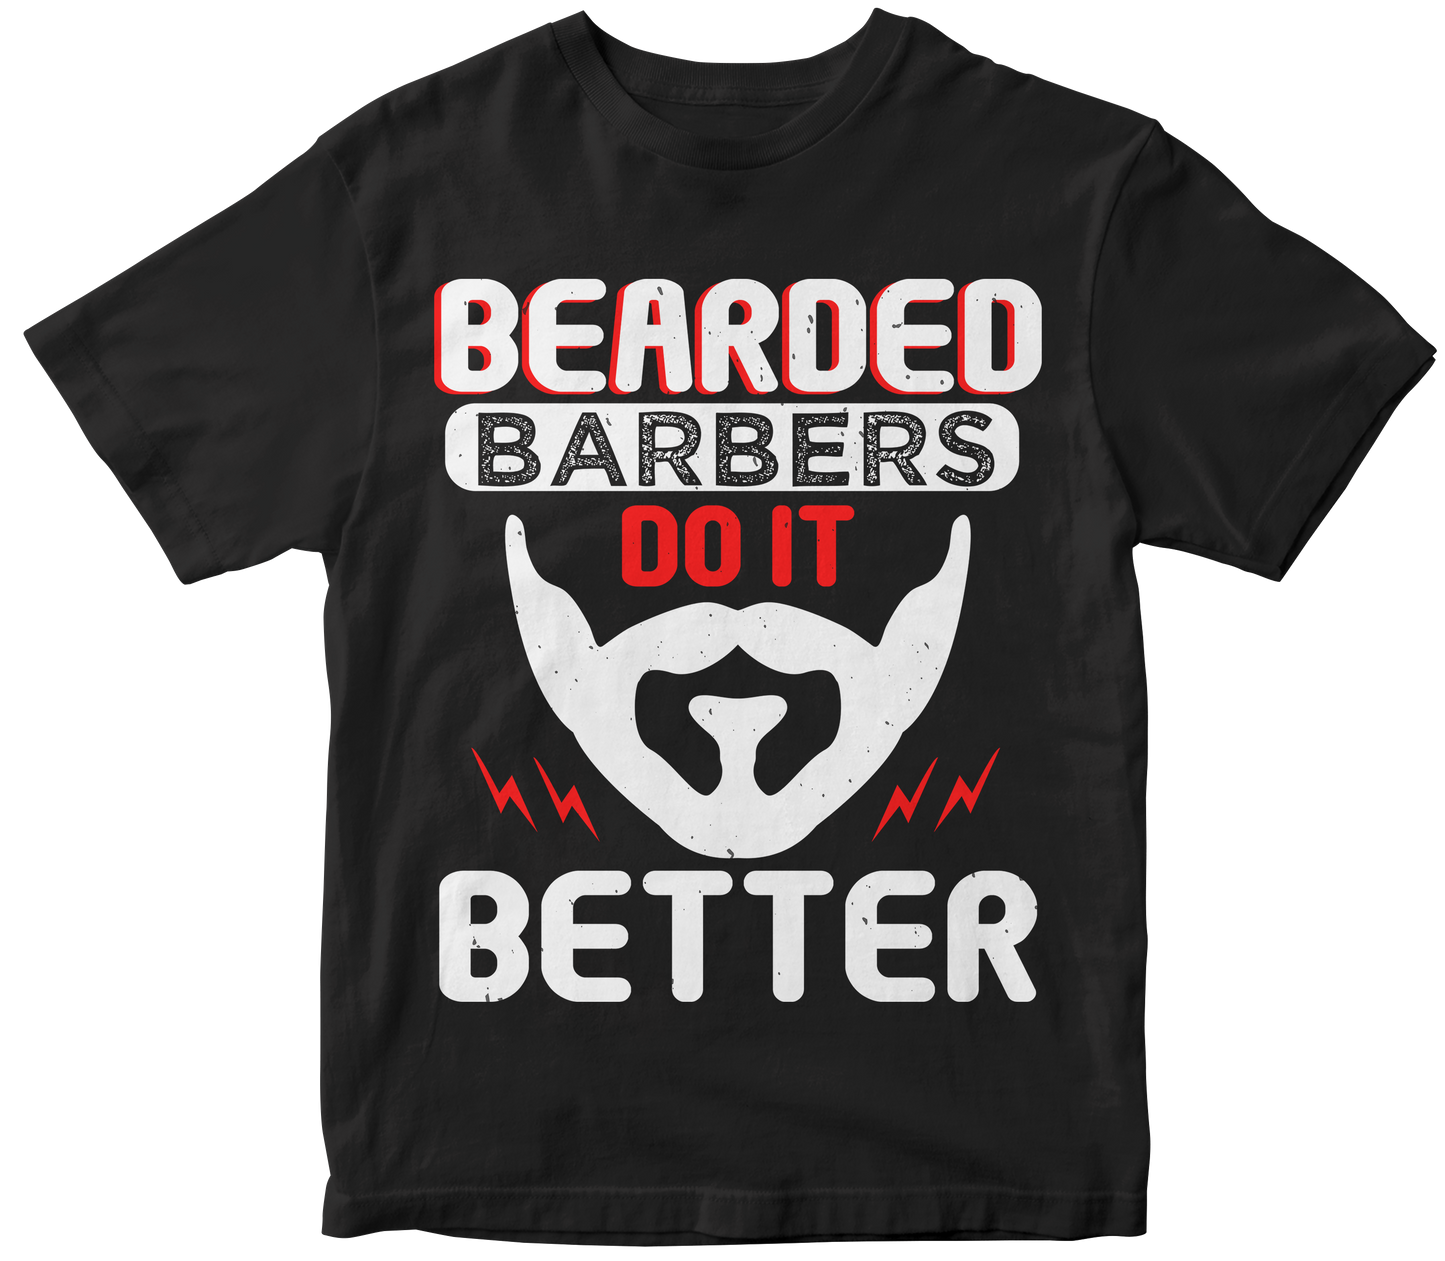 Bearded barbers do it better